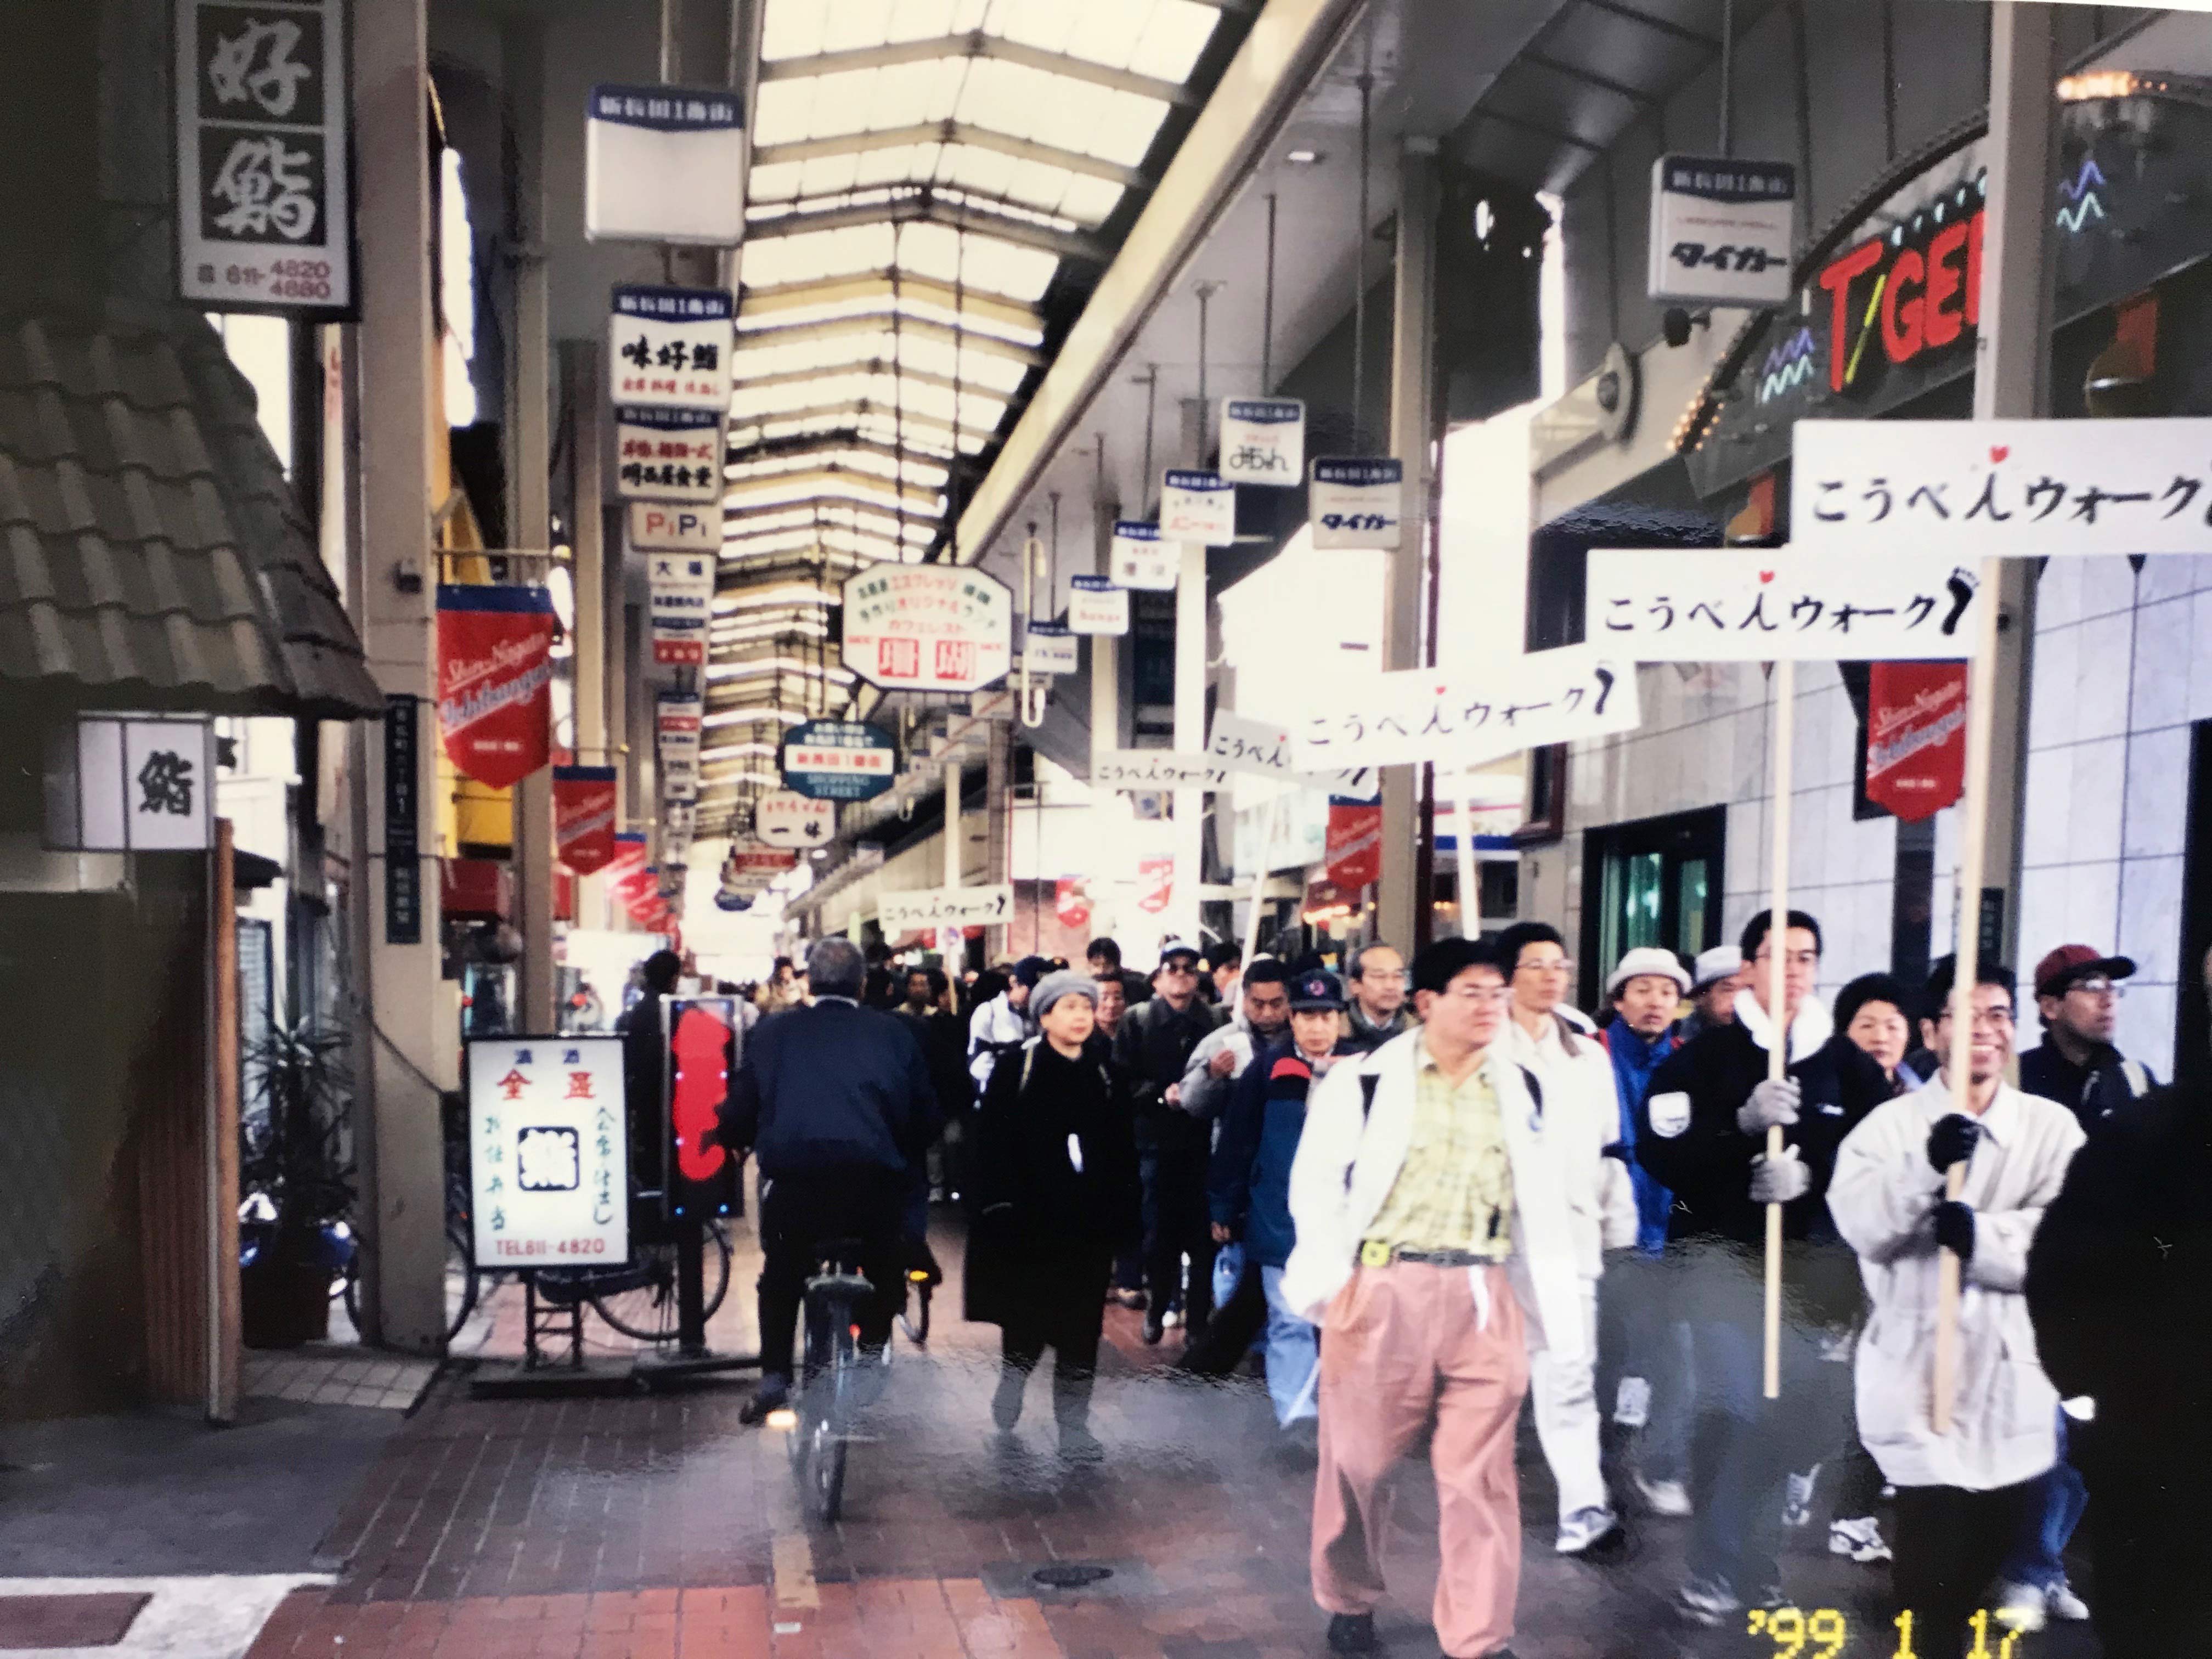 阪神・淡路大震災の当時の様子や復興までの過程を歩いて学ぶチャリティ・ウォークイベント「こうべｉ（あい）ウォーク」。平成11年の第1回には、3500人の参加者が集まり、長田から東遊園地まで10キロを歩いた。